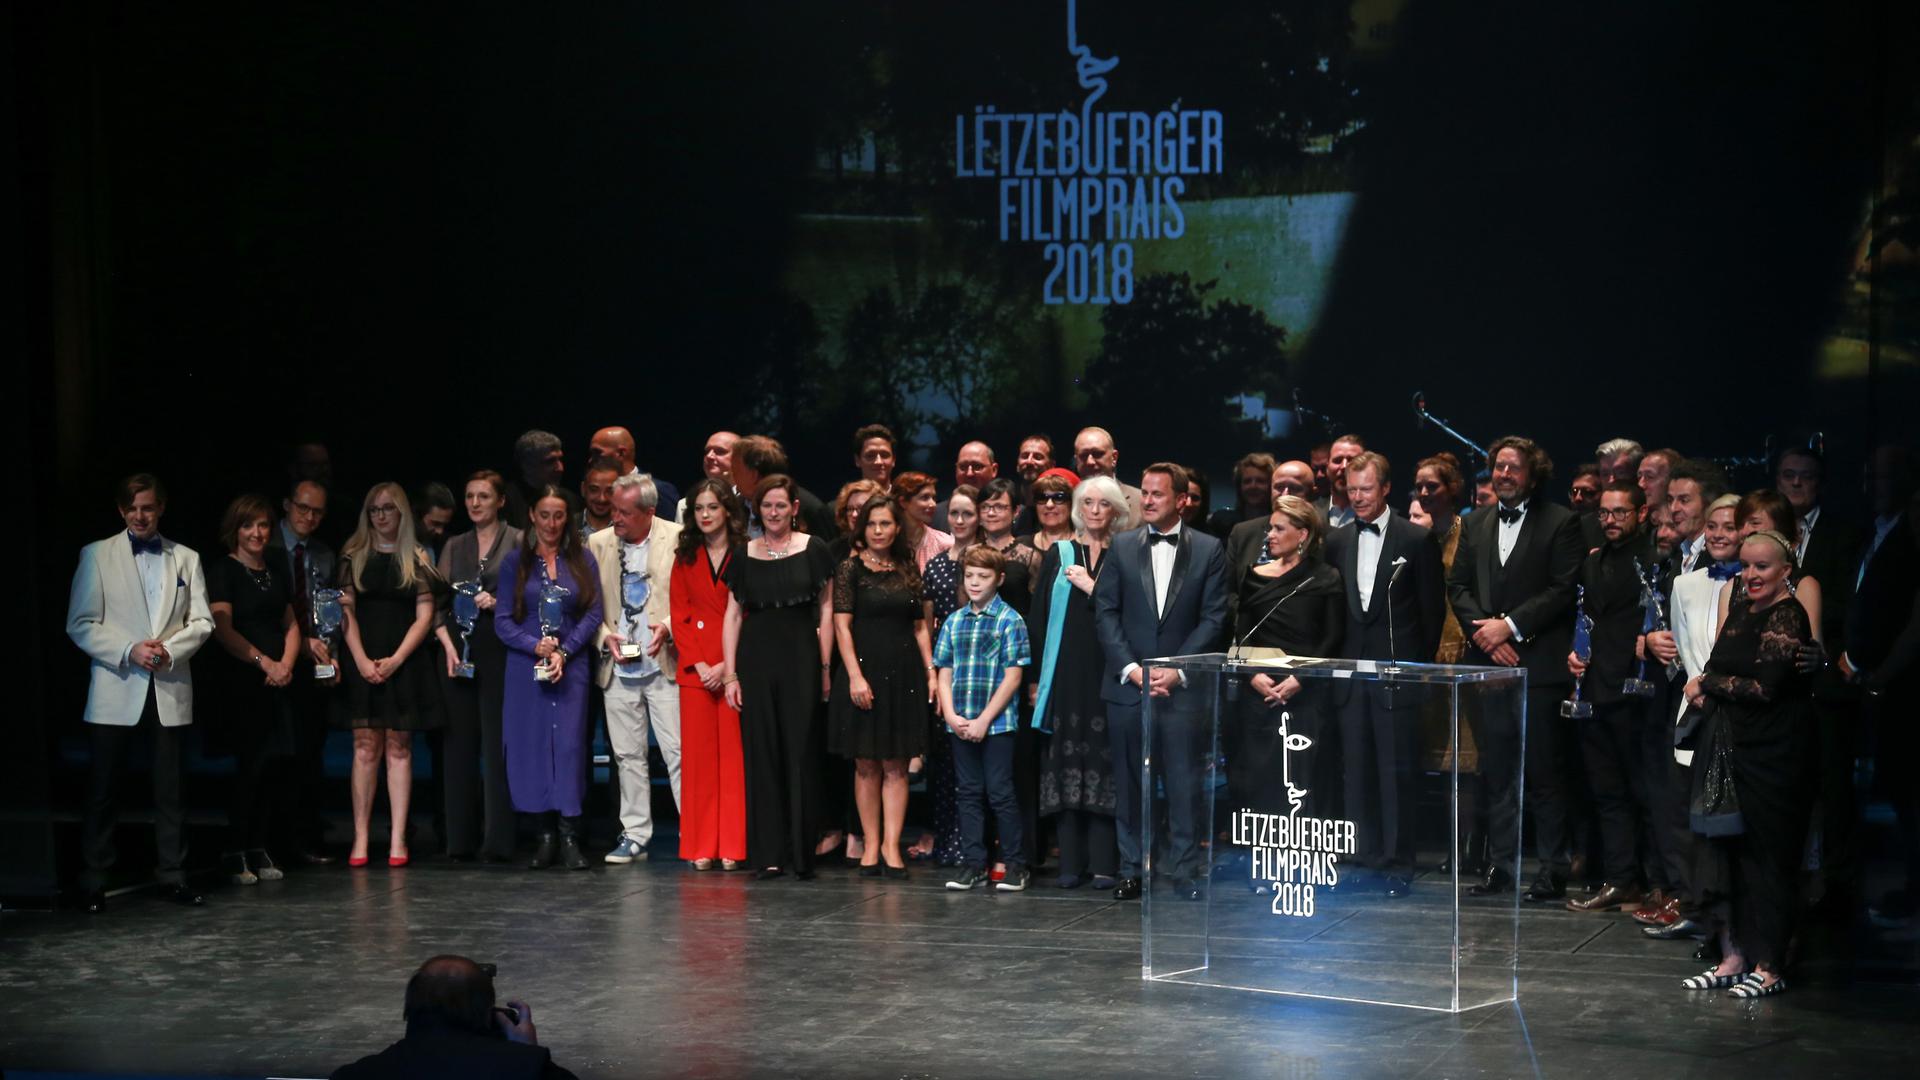 La dernière traditionnelle photo de famille du cinéma luxembourgeois remonte à septembre 2018.